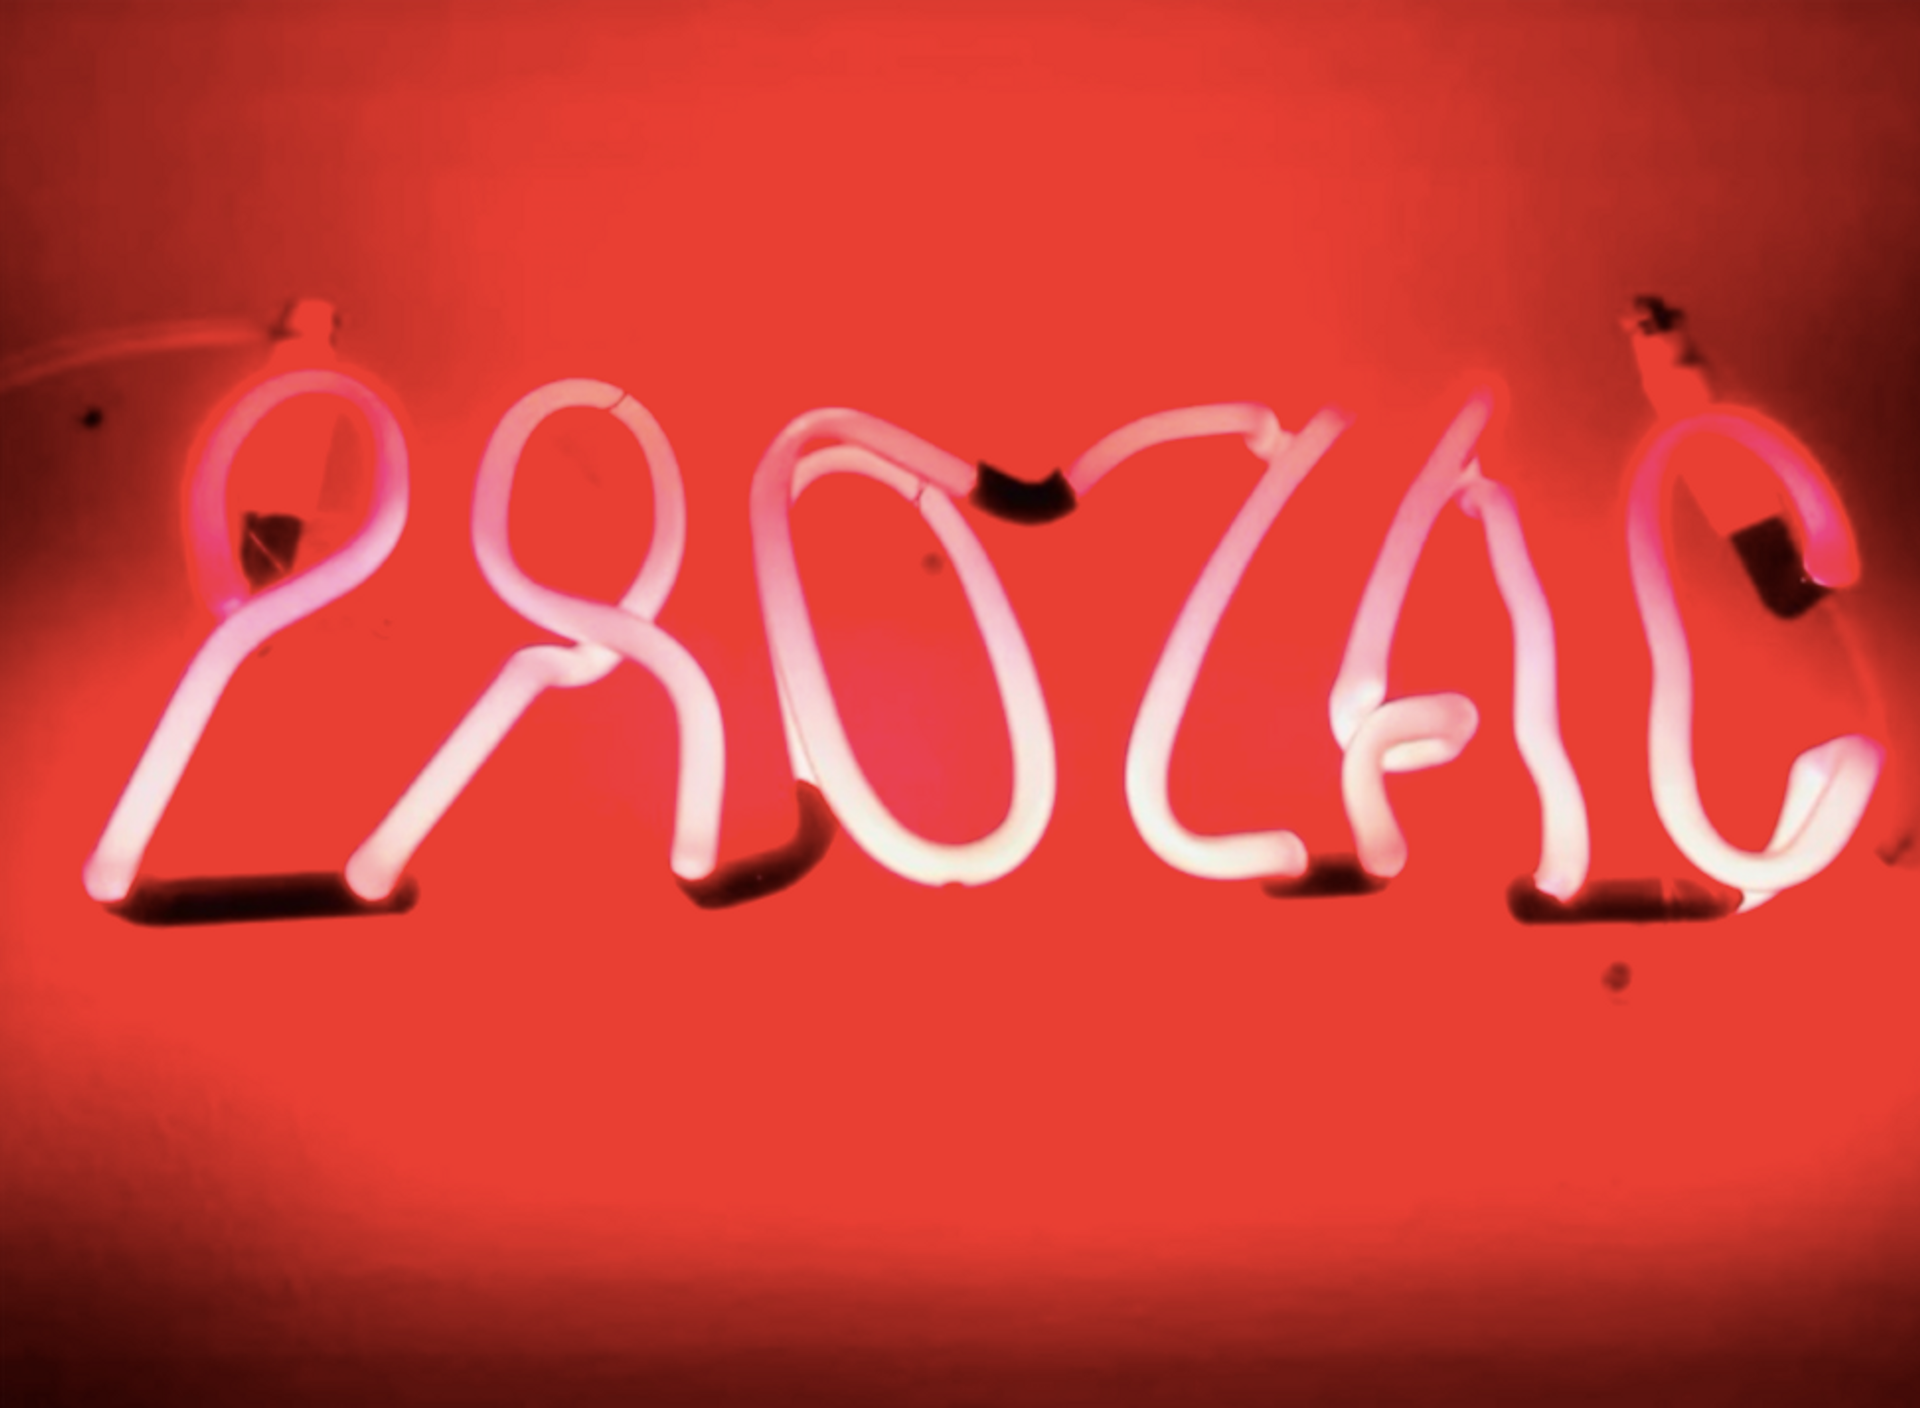 Esther Ruiz, Prozac, 2010, néon lumineux, 15-42 cm. Œuvre exposée à Art Fair Dijon 2022. © D.R.